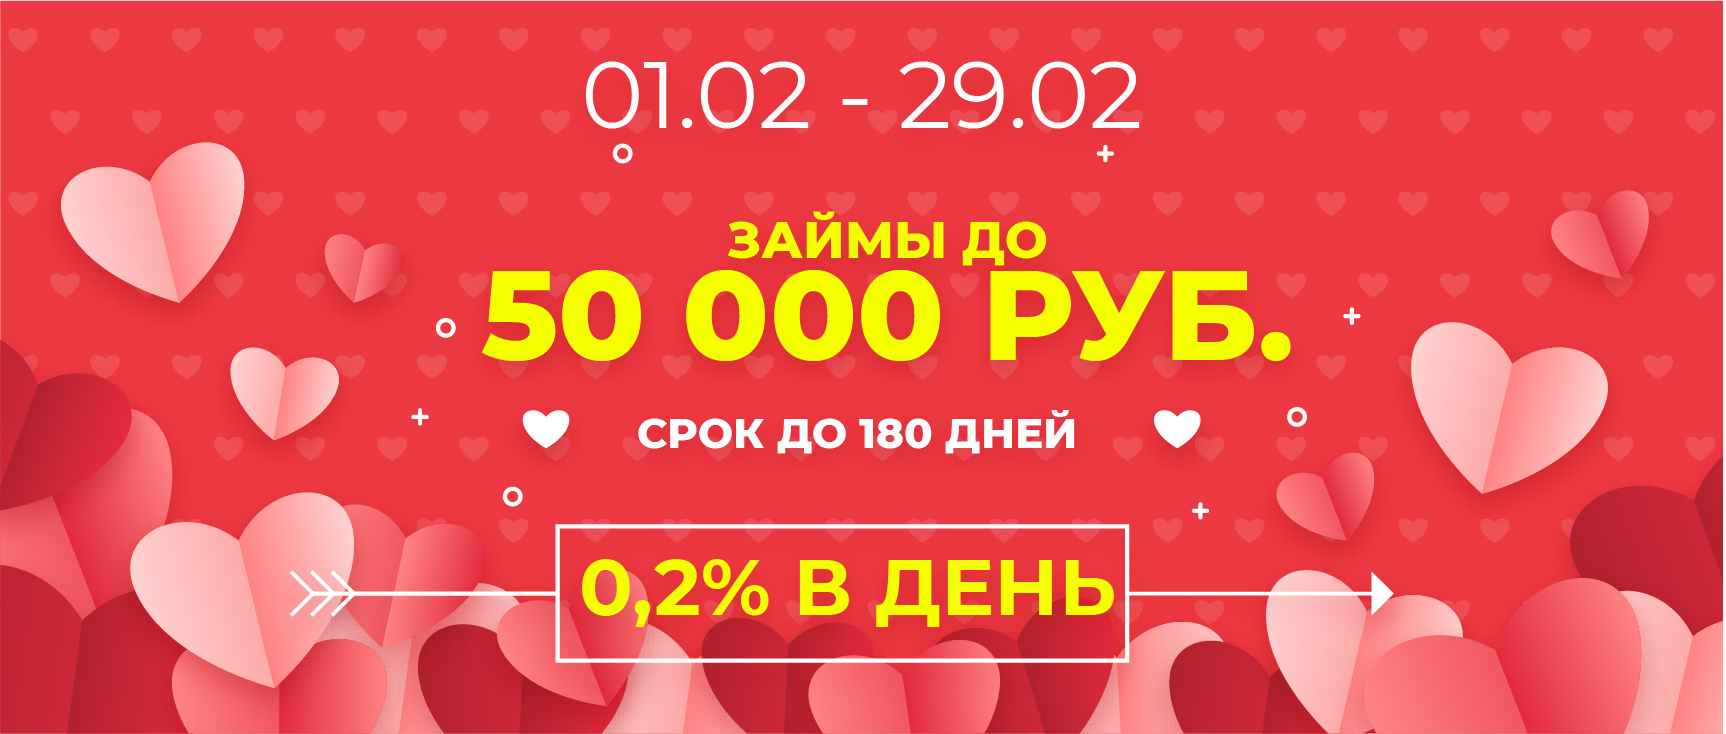 Займ до 50 тысяч рублей без дополнительных страховок и скрытых платежей по льготной процентной ставке. Оставь заявку по телефону 88005055565!